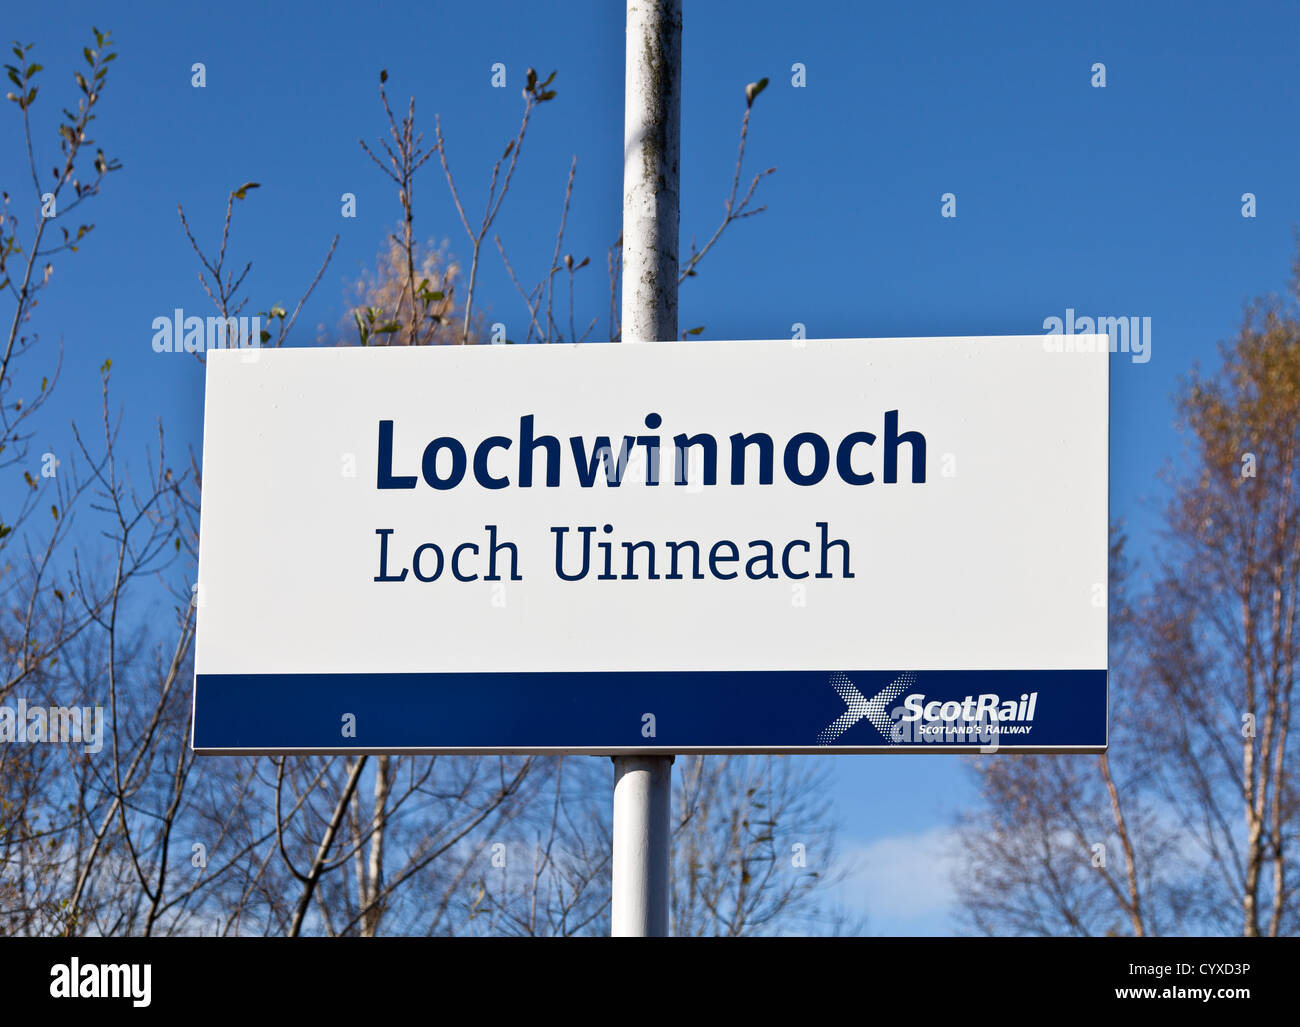 Firmar en Lochwinnoch railway station, Escocia, con traducción en gaélico Loch Uinneach. Foto de stock